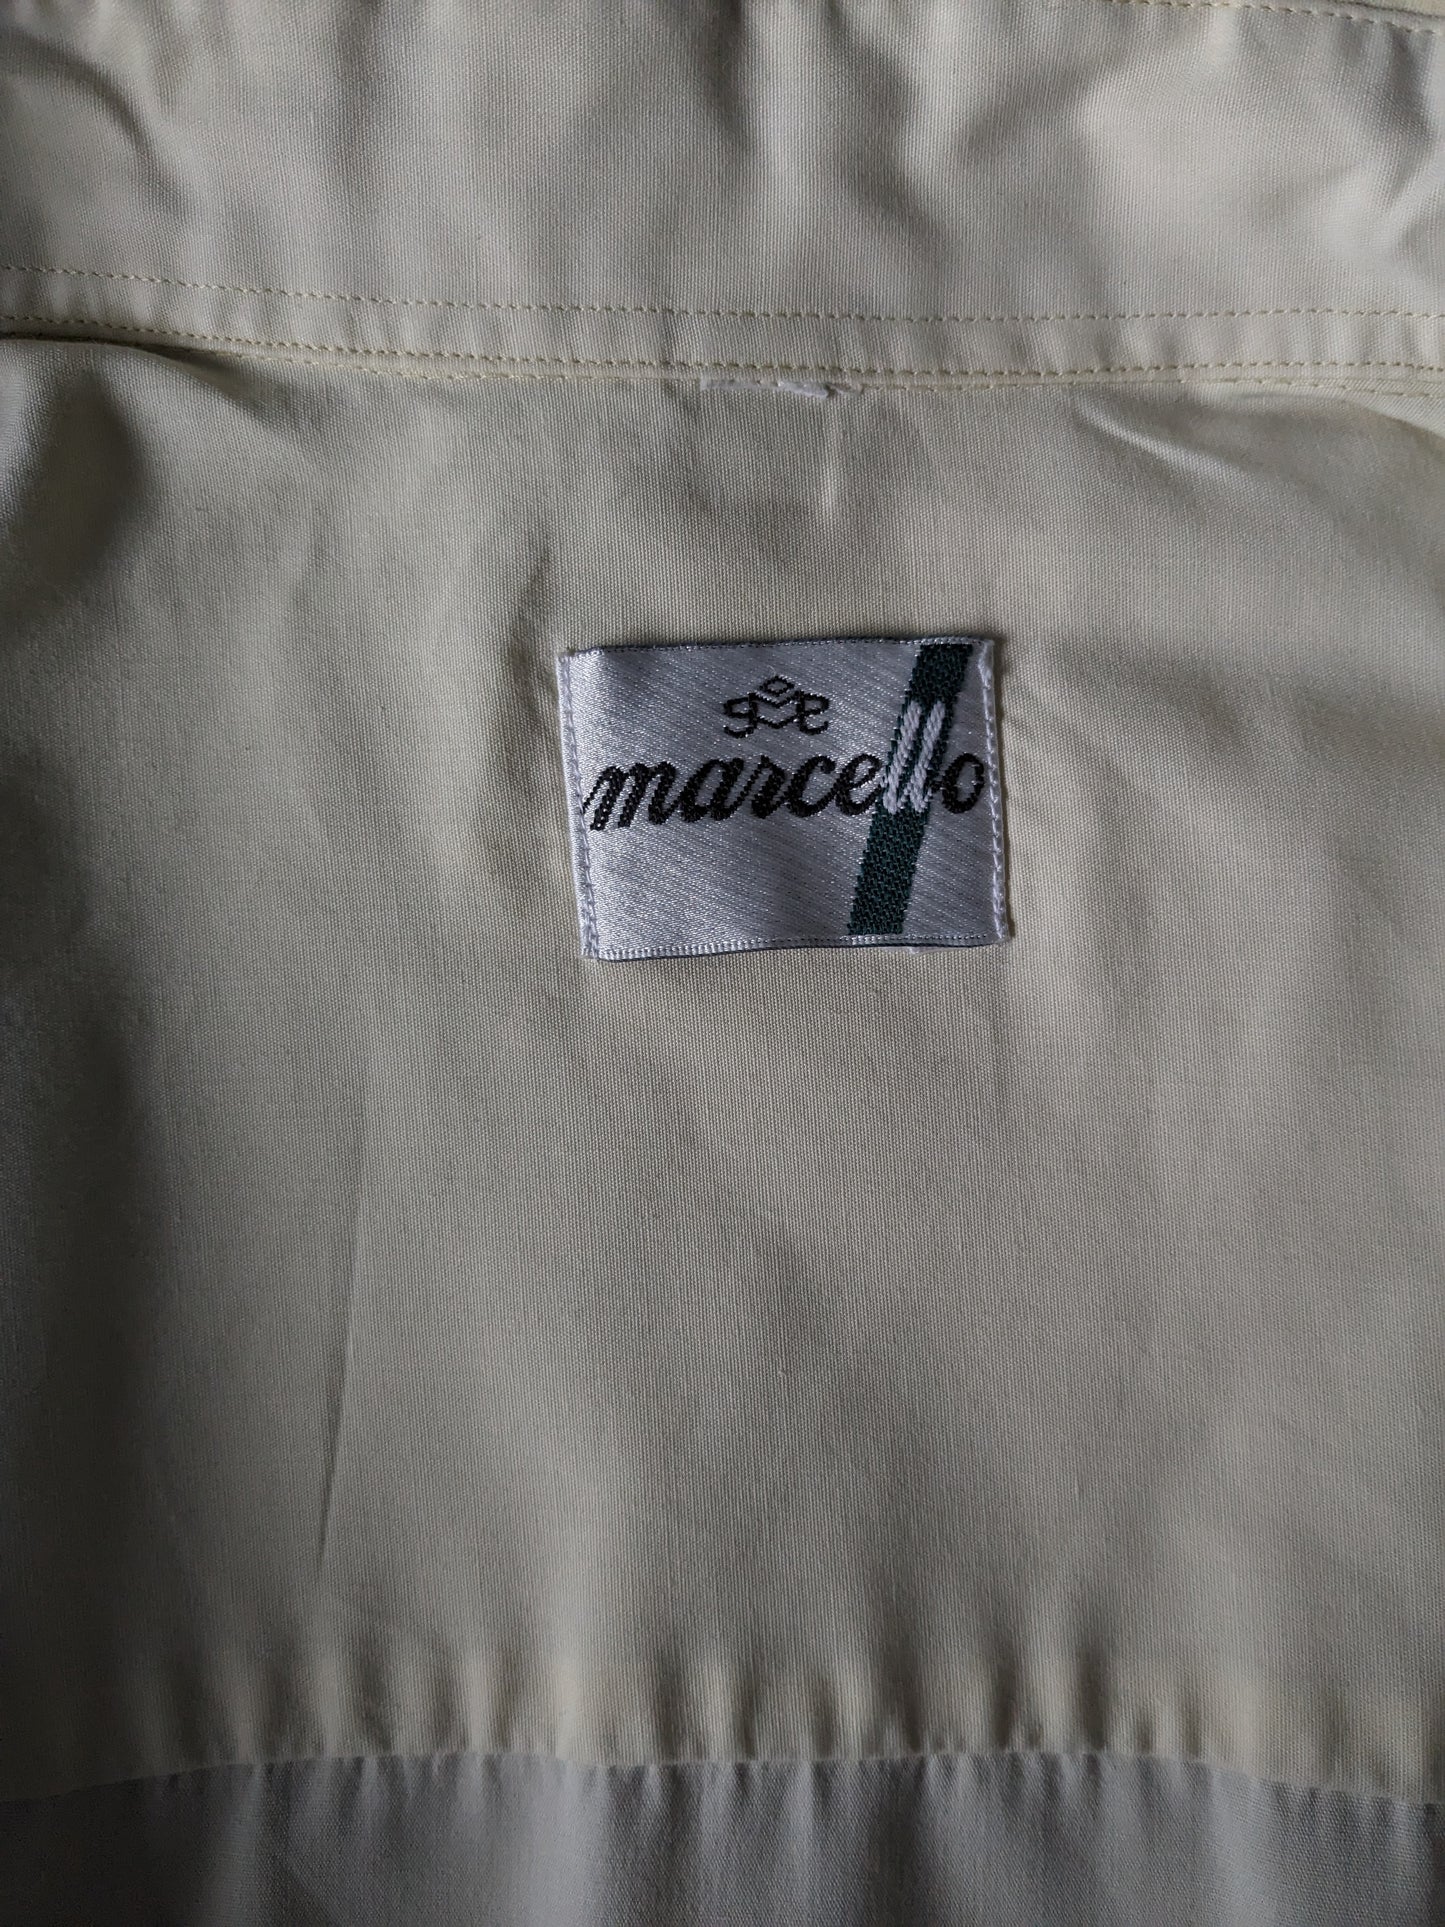 Camicia Marcello degli anni '70 con colletto punti. Colore giallo chiaro. Taglia XL.